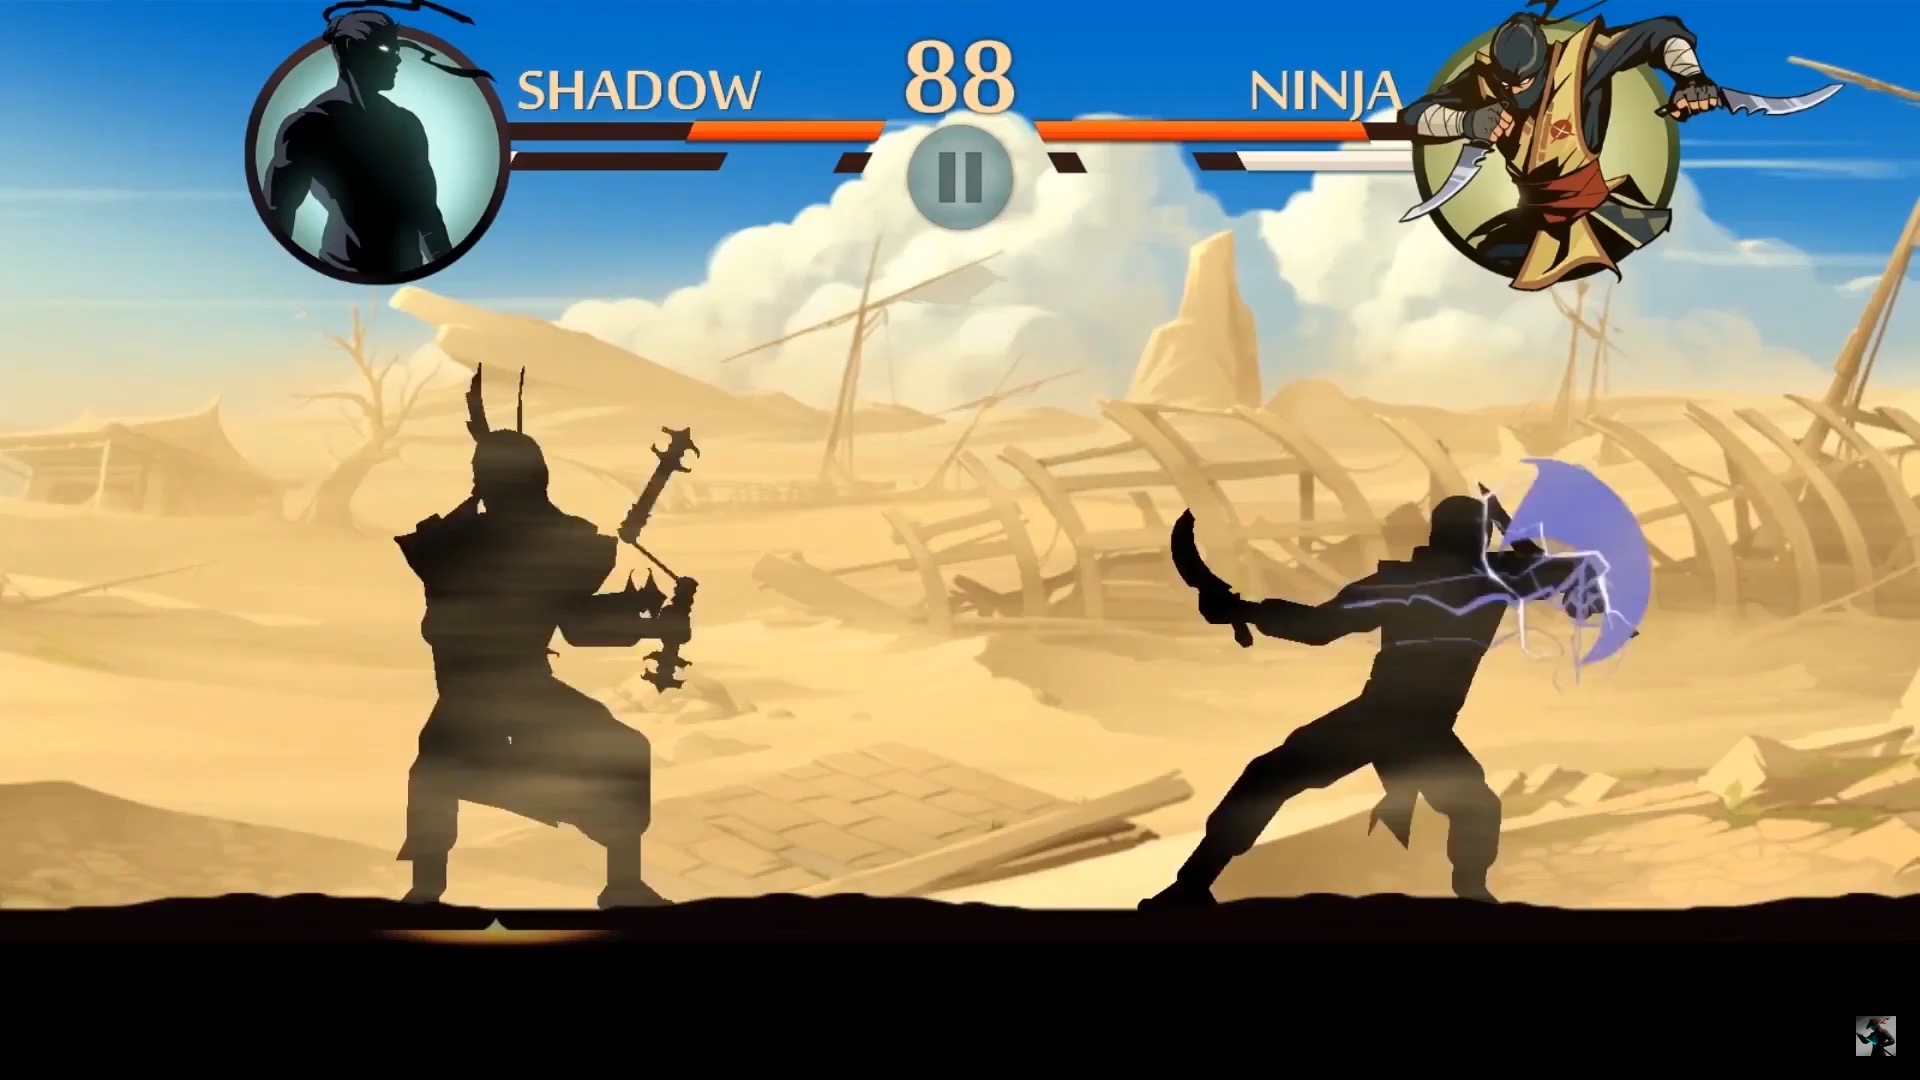 Последняя версия игра shadow fight 2. Shadow Fight 2 Shadow. Тень из игры Shadow Fight 2. Тень из Шедоу файт 2. Шадоу файт 2 Special Edition.